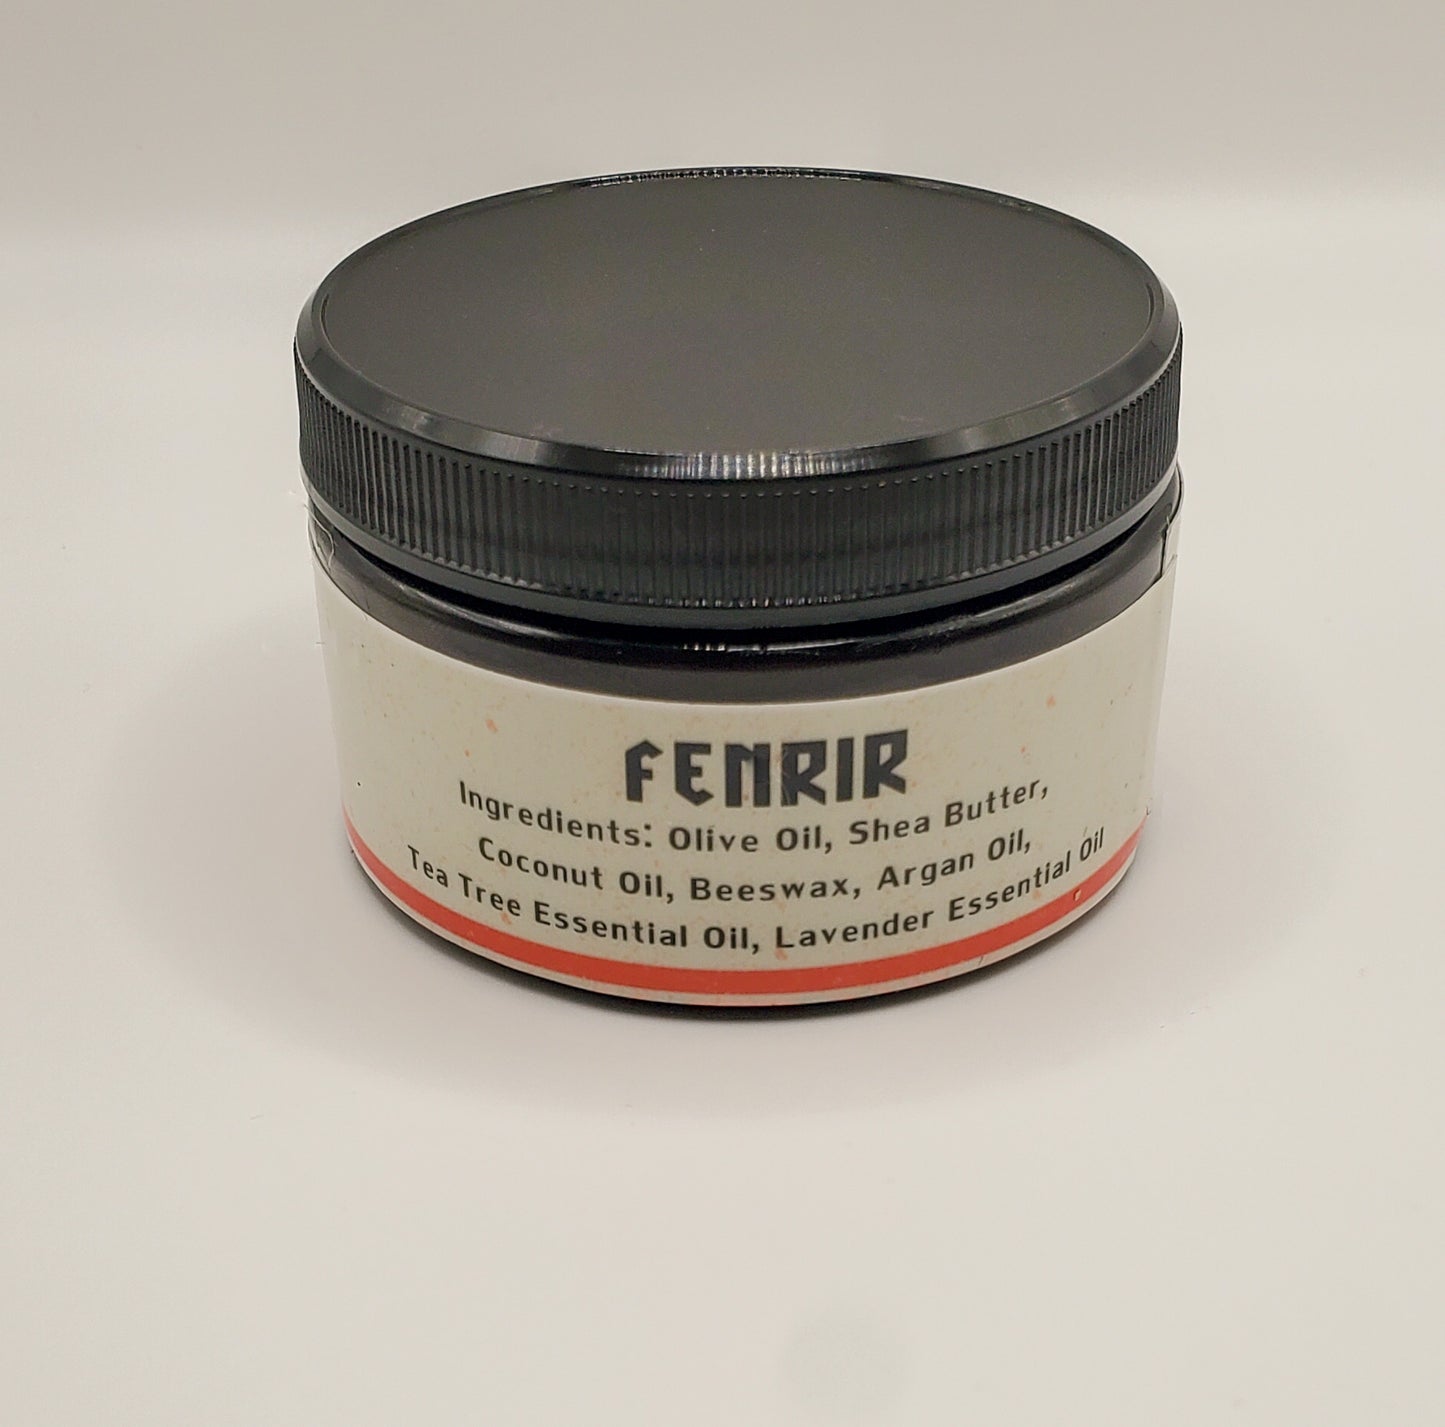 Fenrir Beard Balm // Tea Tree Lavender Beard Balm